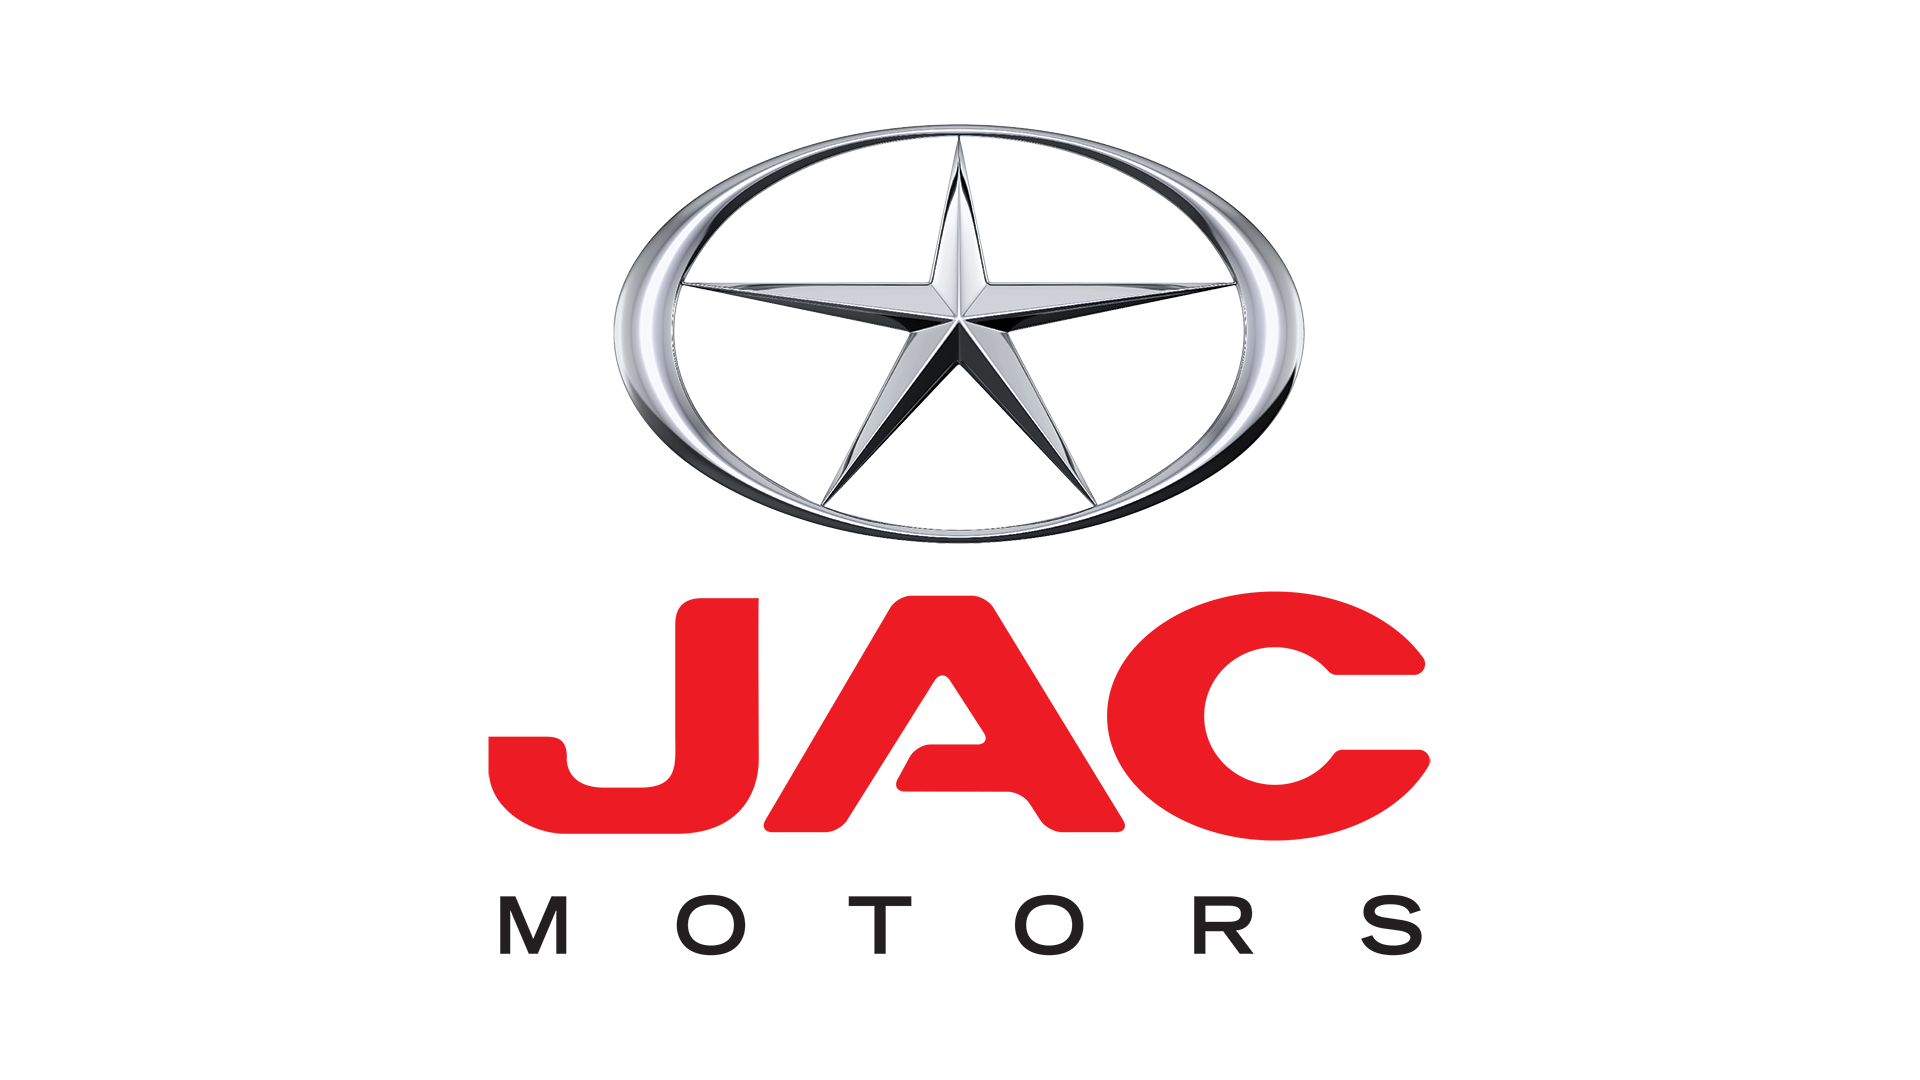 JAC-Motors-logo-old-1920x1080